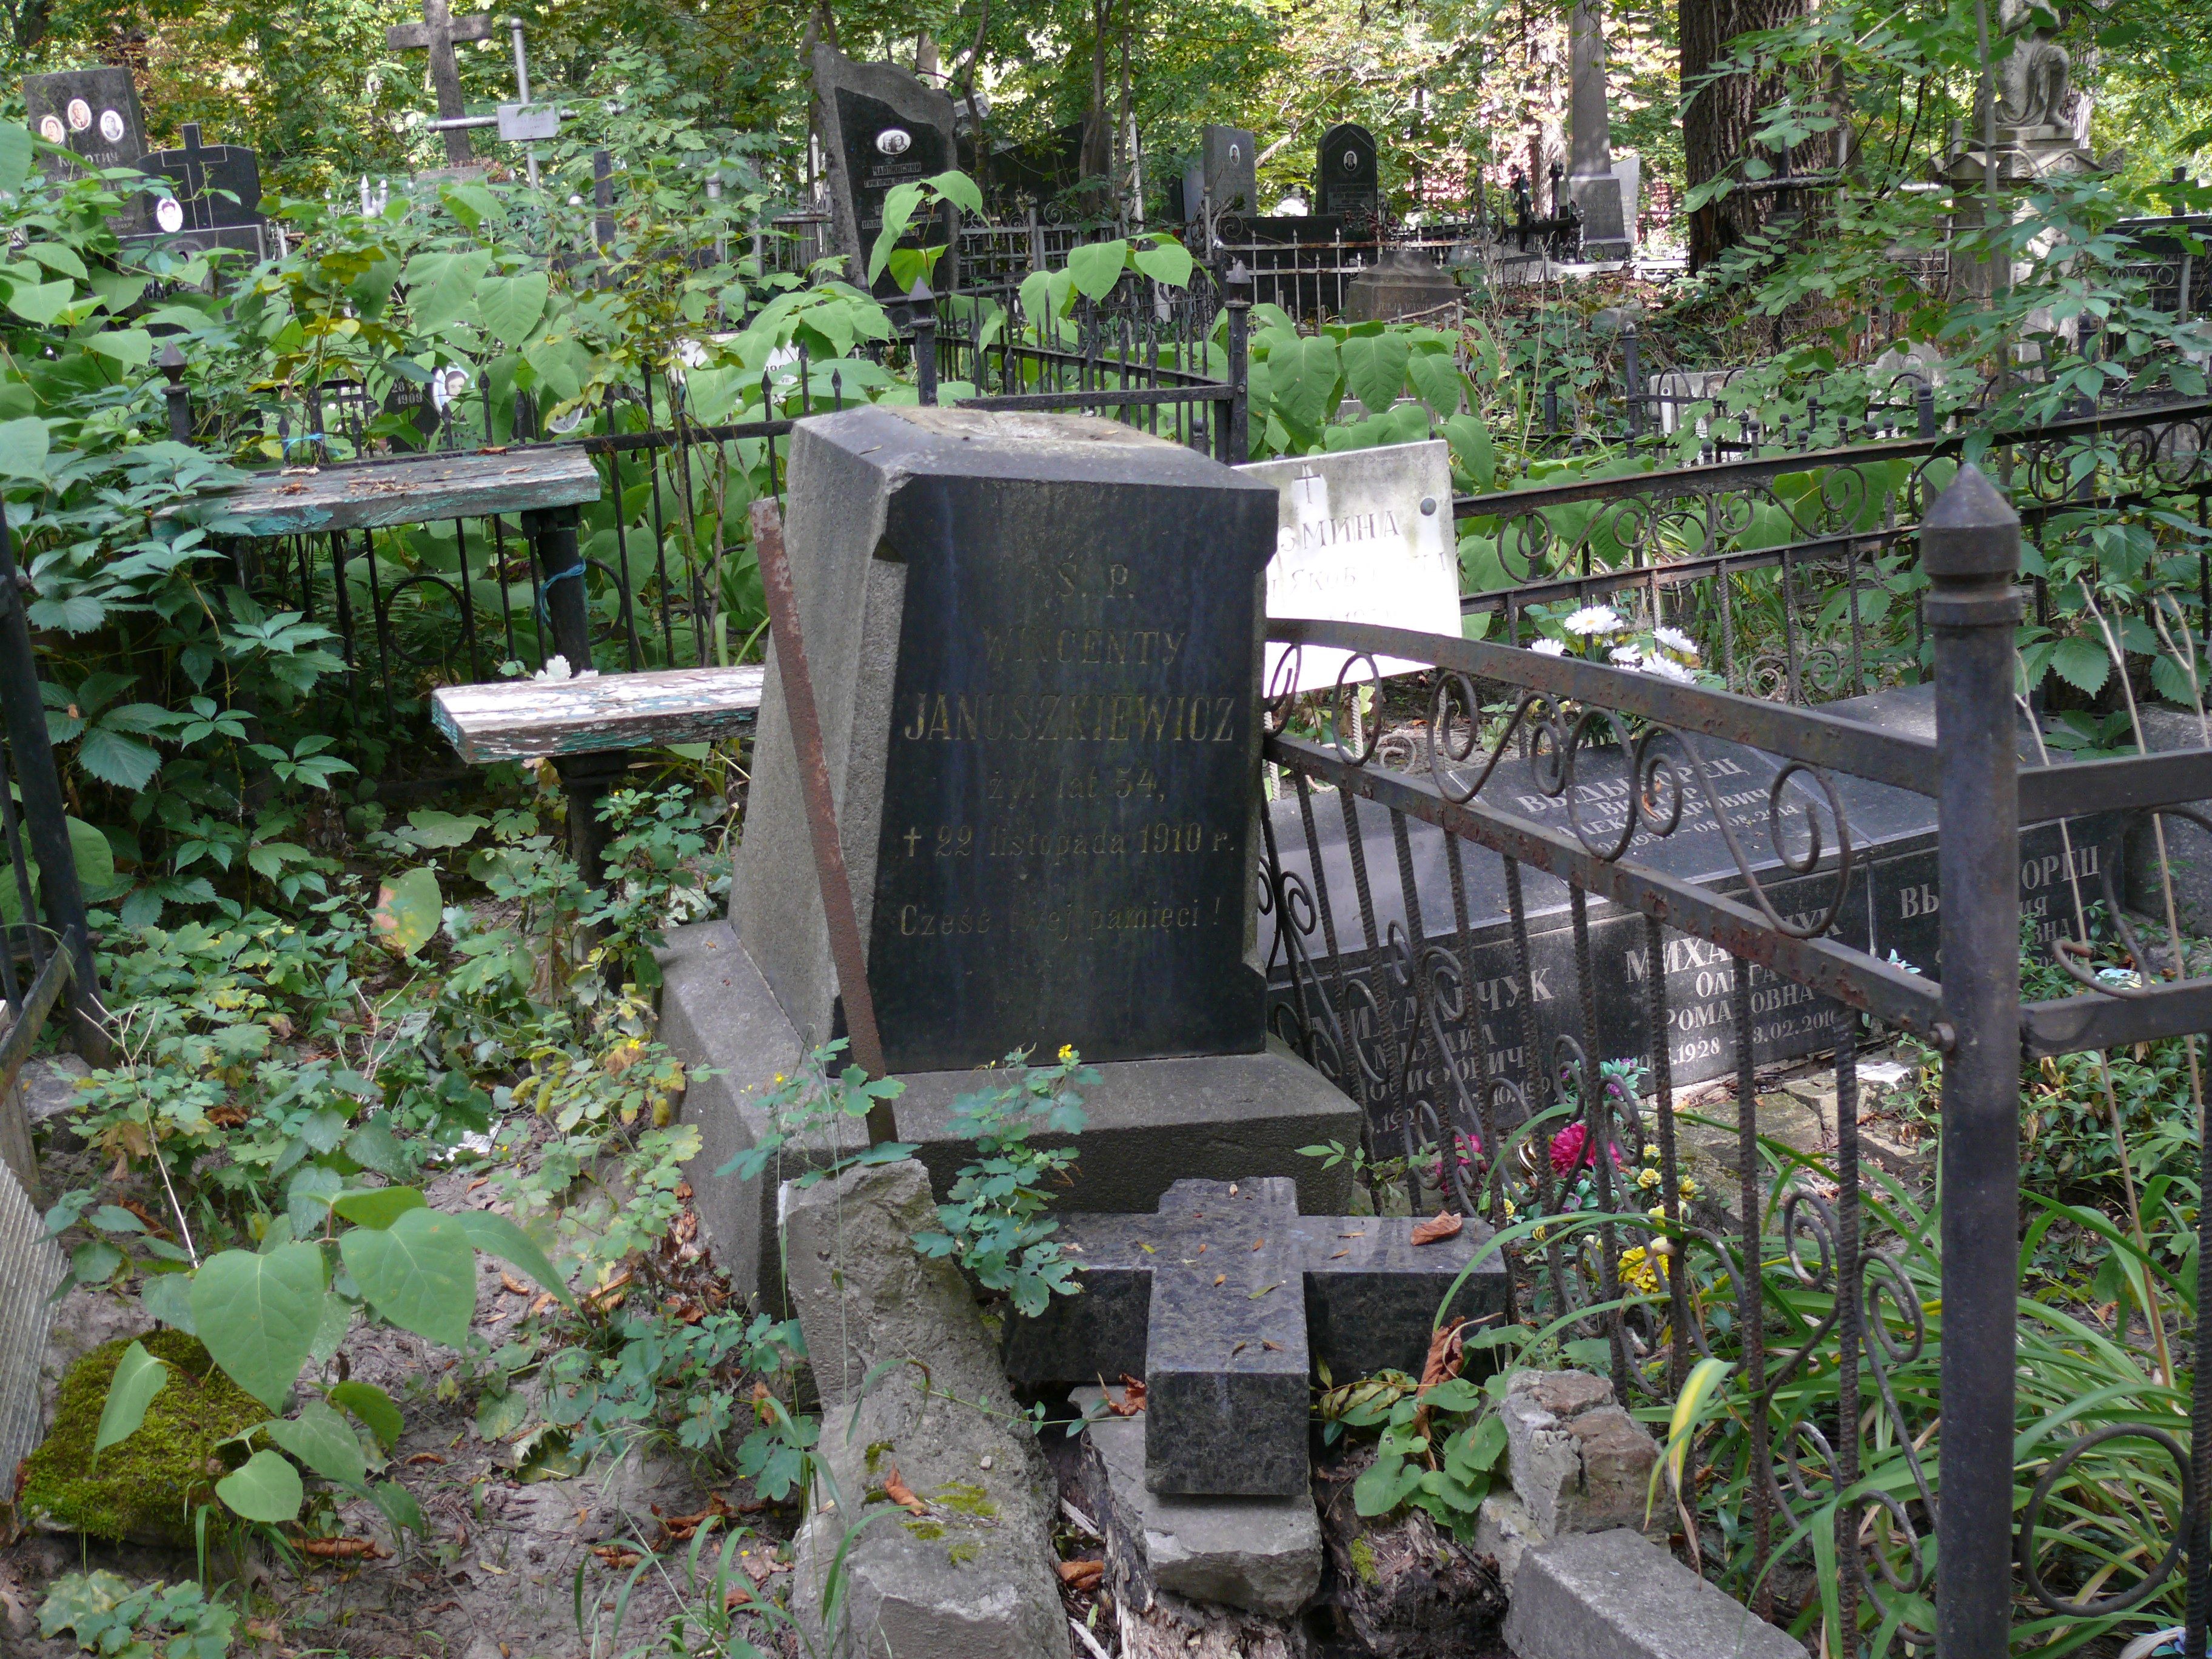 Nagrobek Wincentego Januszkiewicza, cmentarz Bajkowa w Kijowie, stan z 2021